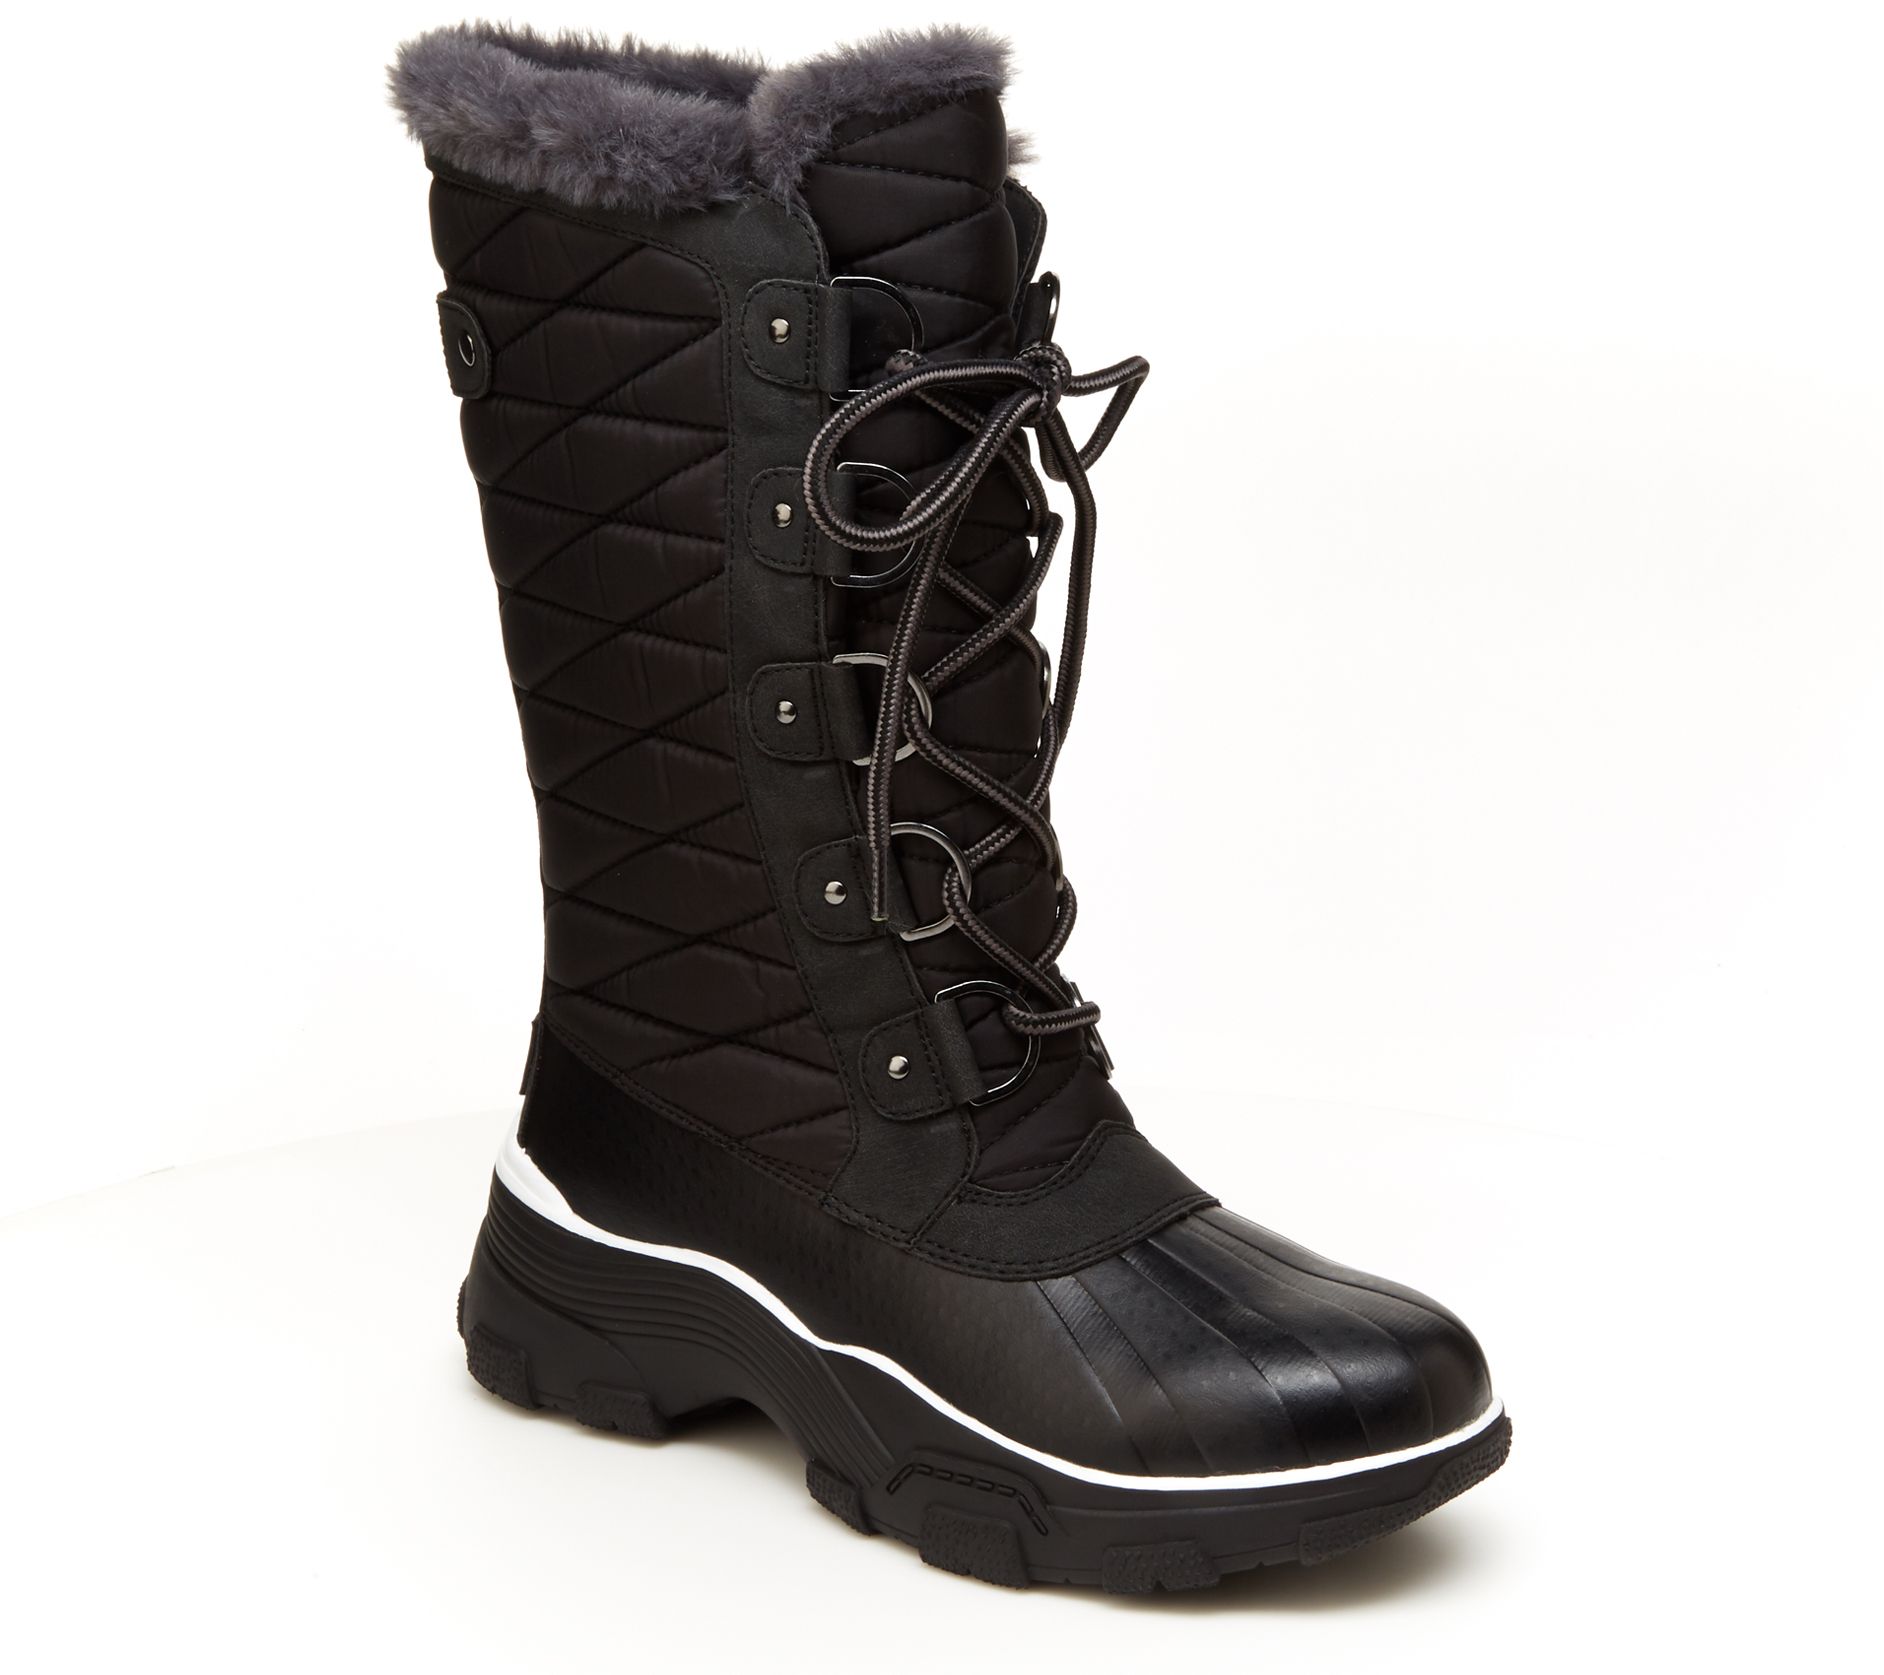 jambu waterproof boots